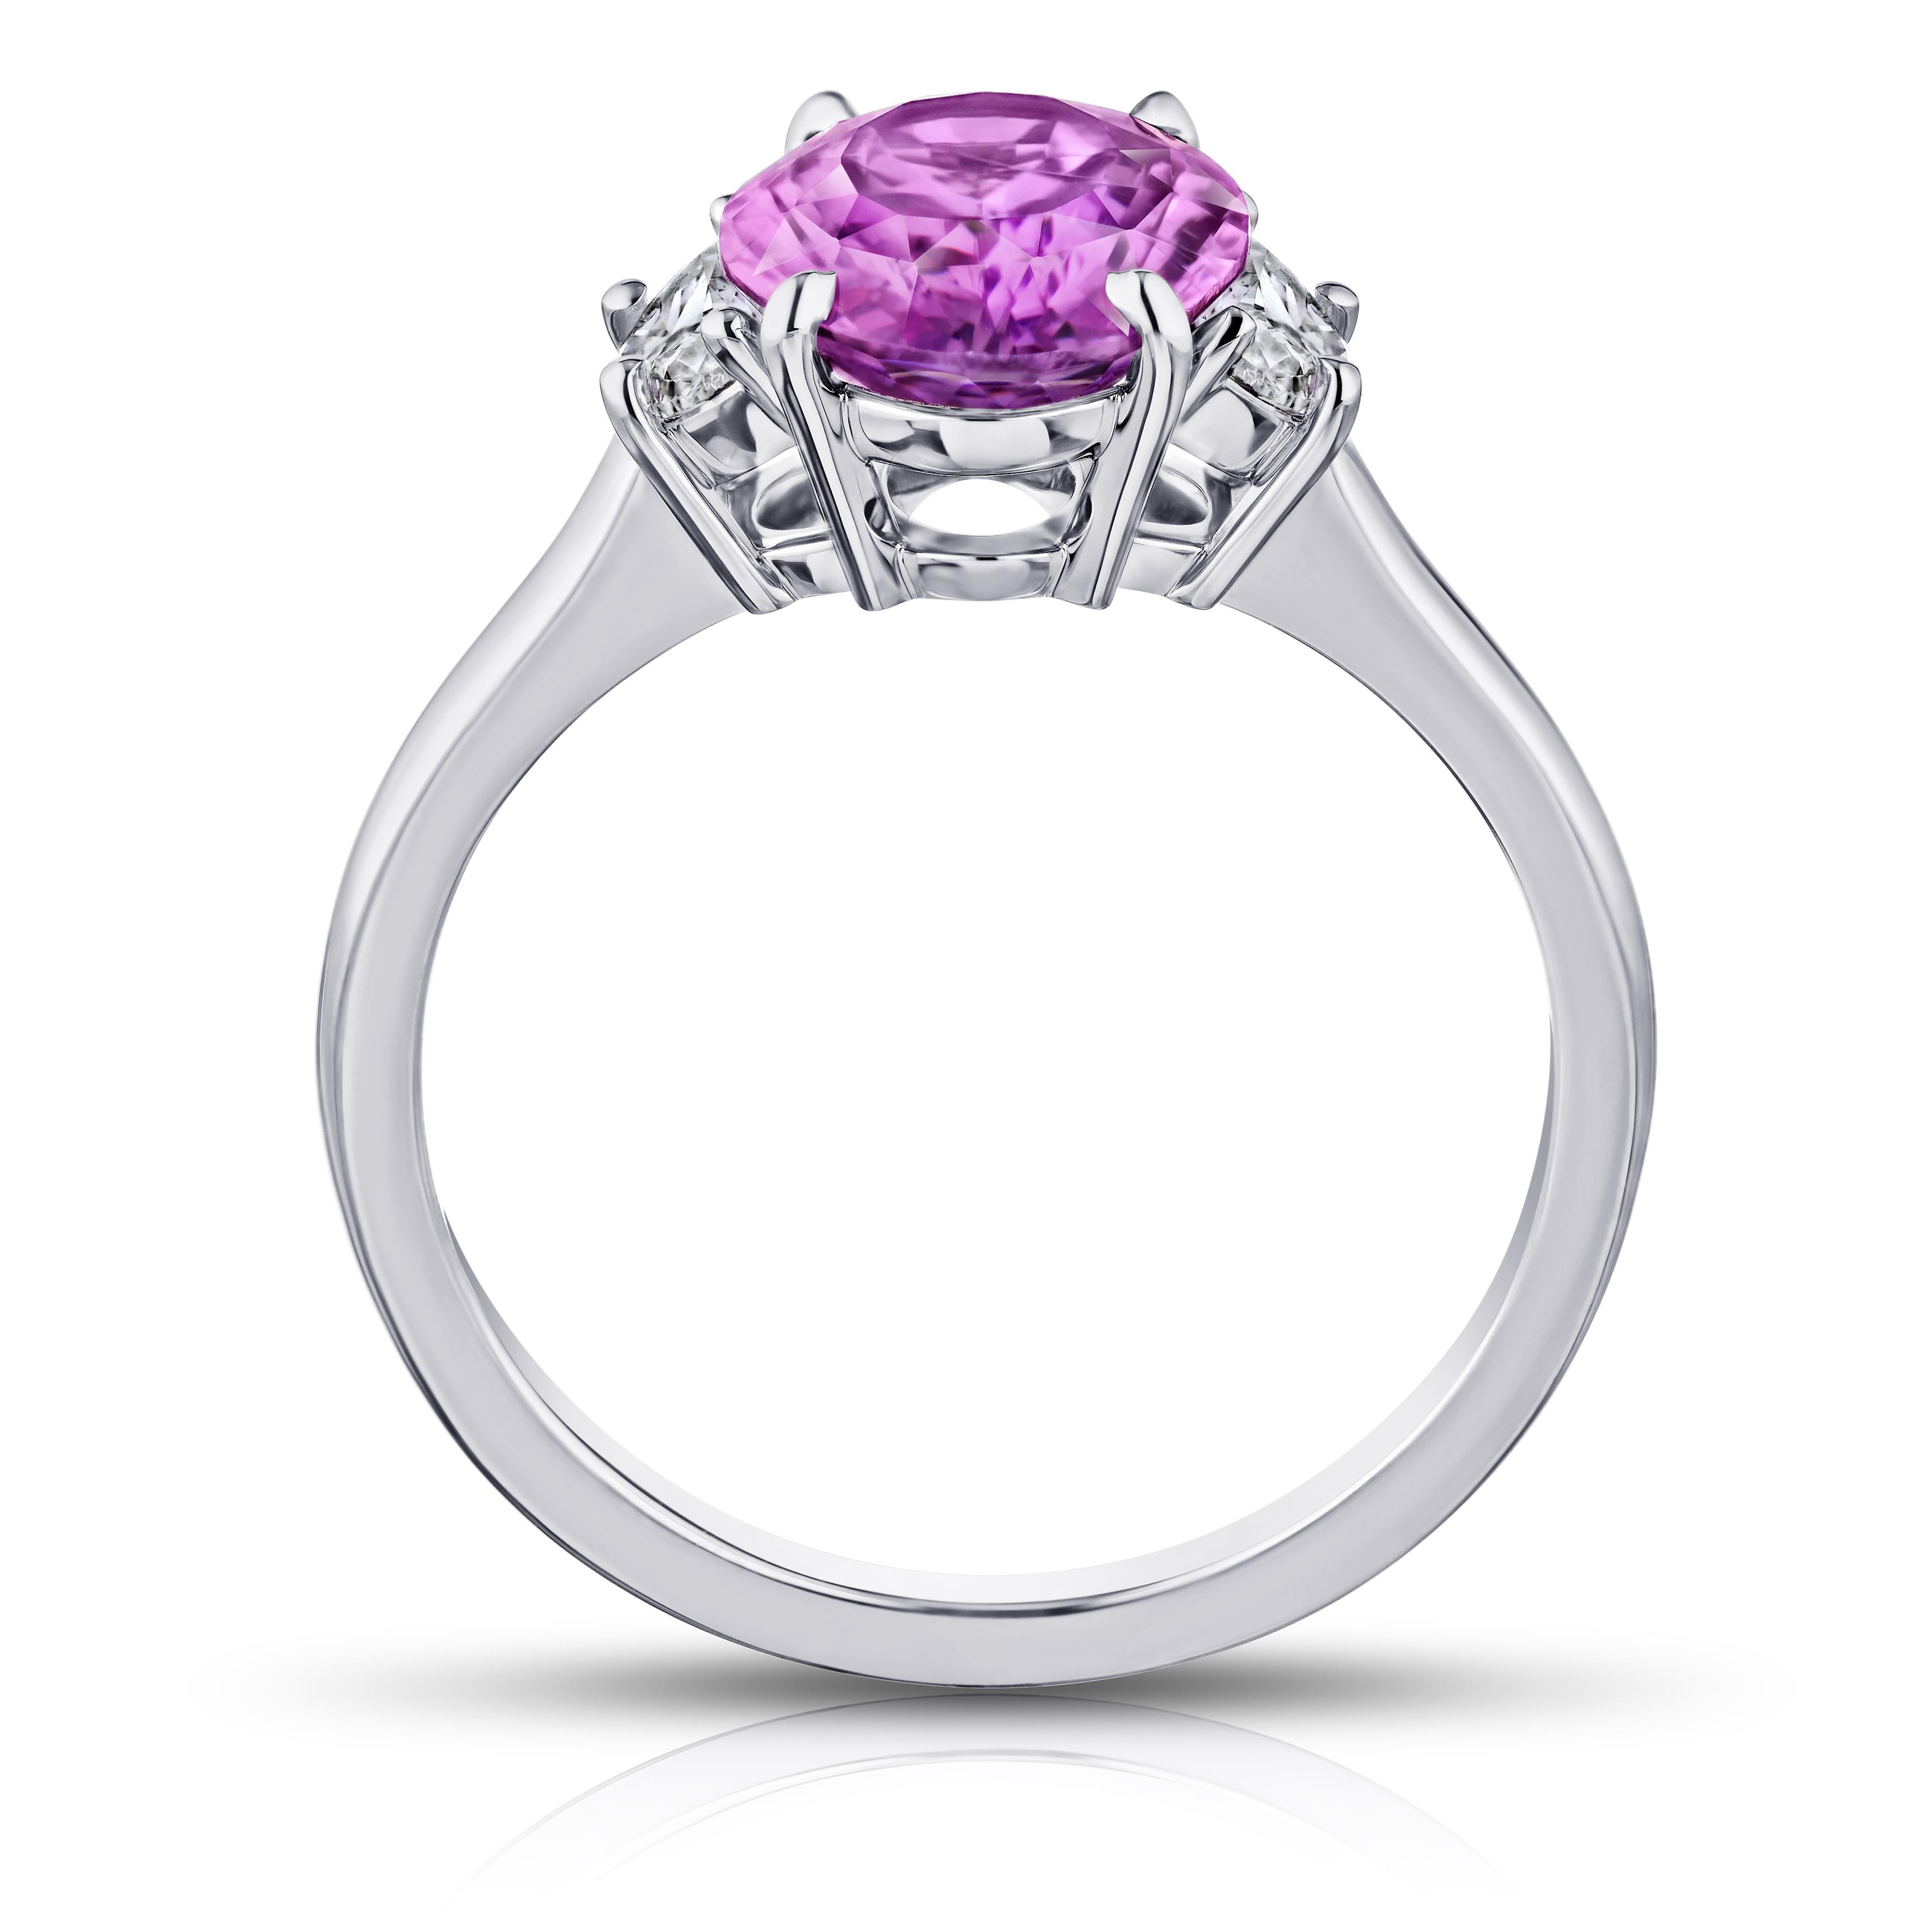 3.21 Karat ovaler rosa Saphir mit Halbmond-Diamanten von 0,36 Karat in einem Platinring. Der Ring hat derzeit die Größe 7. Resizing auf Ihre Fingergröße ist im Preis inbegriffen.
